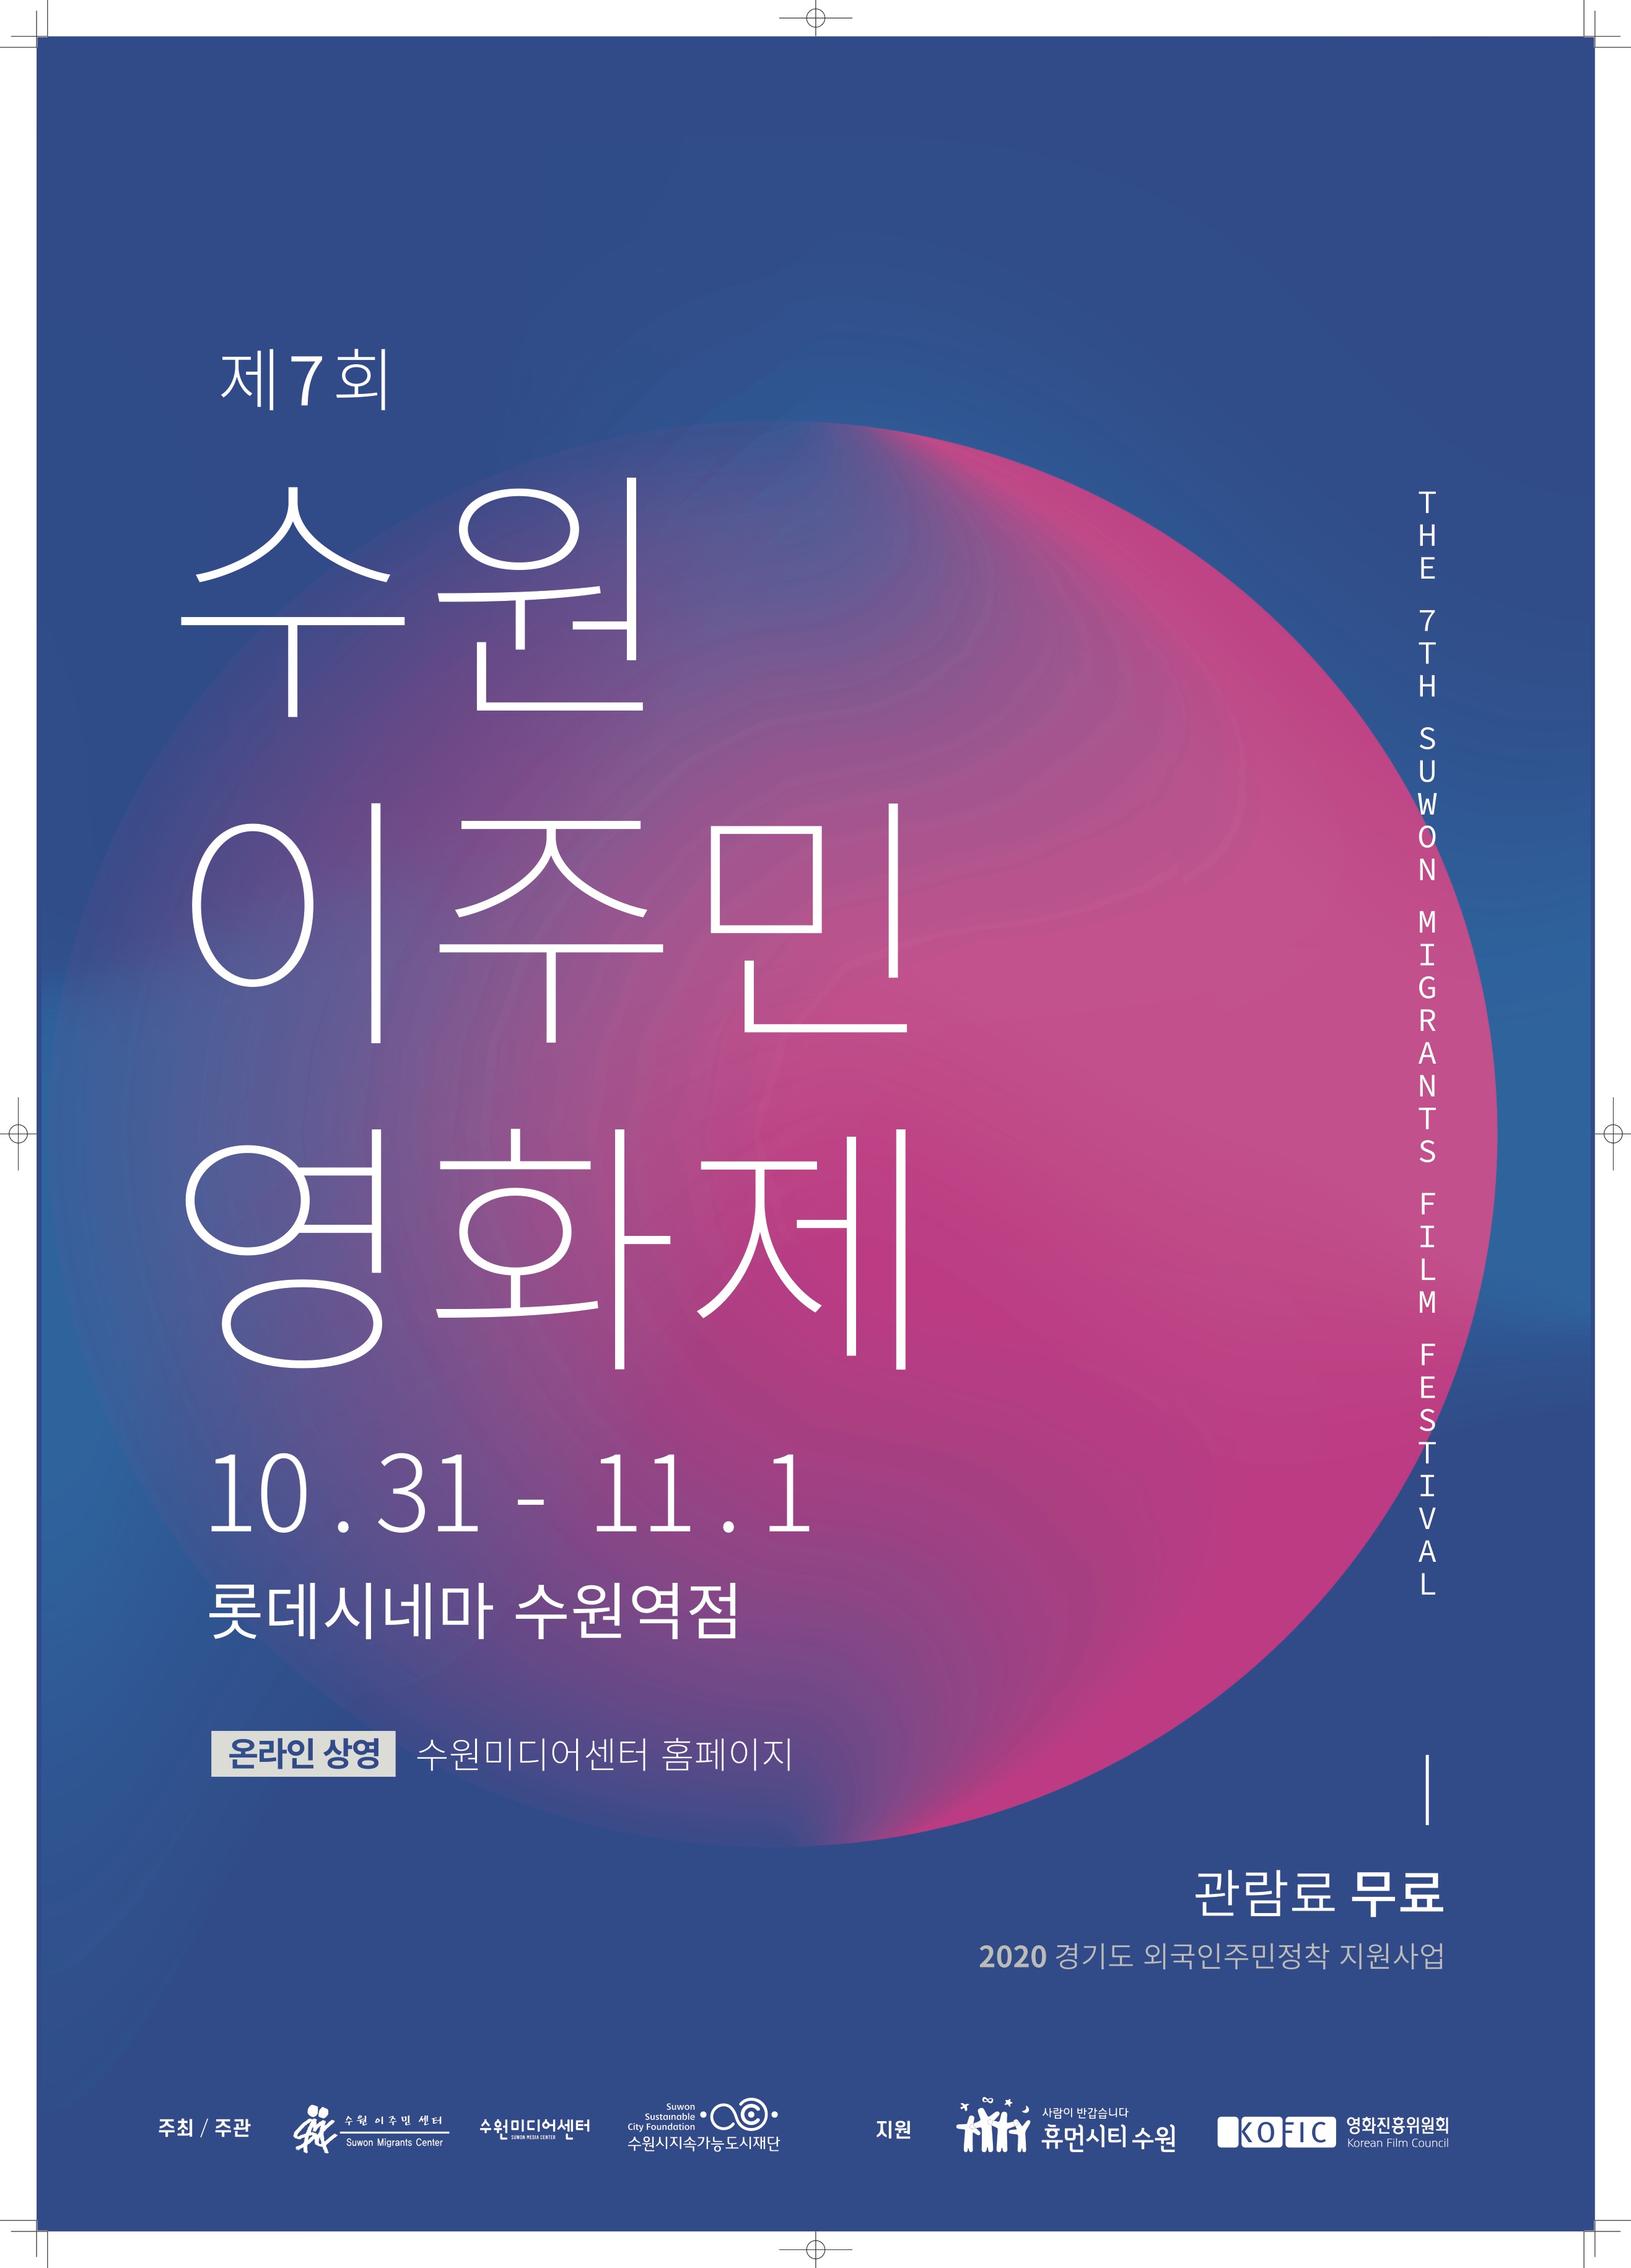 제7회 수원이주민영화제, 10월 31일~11월 1일 개최